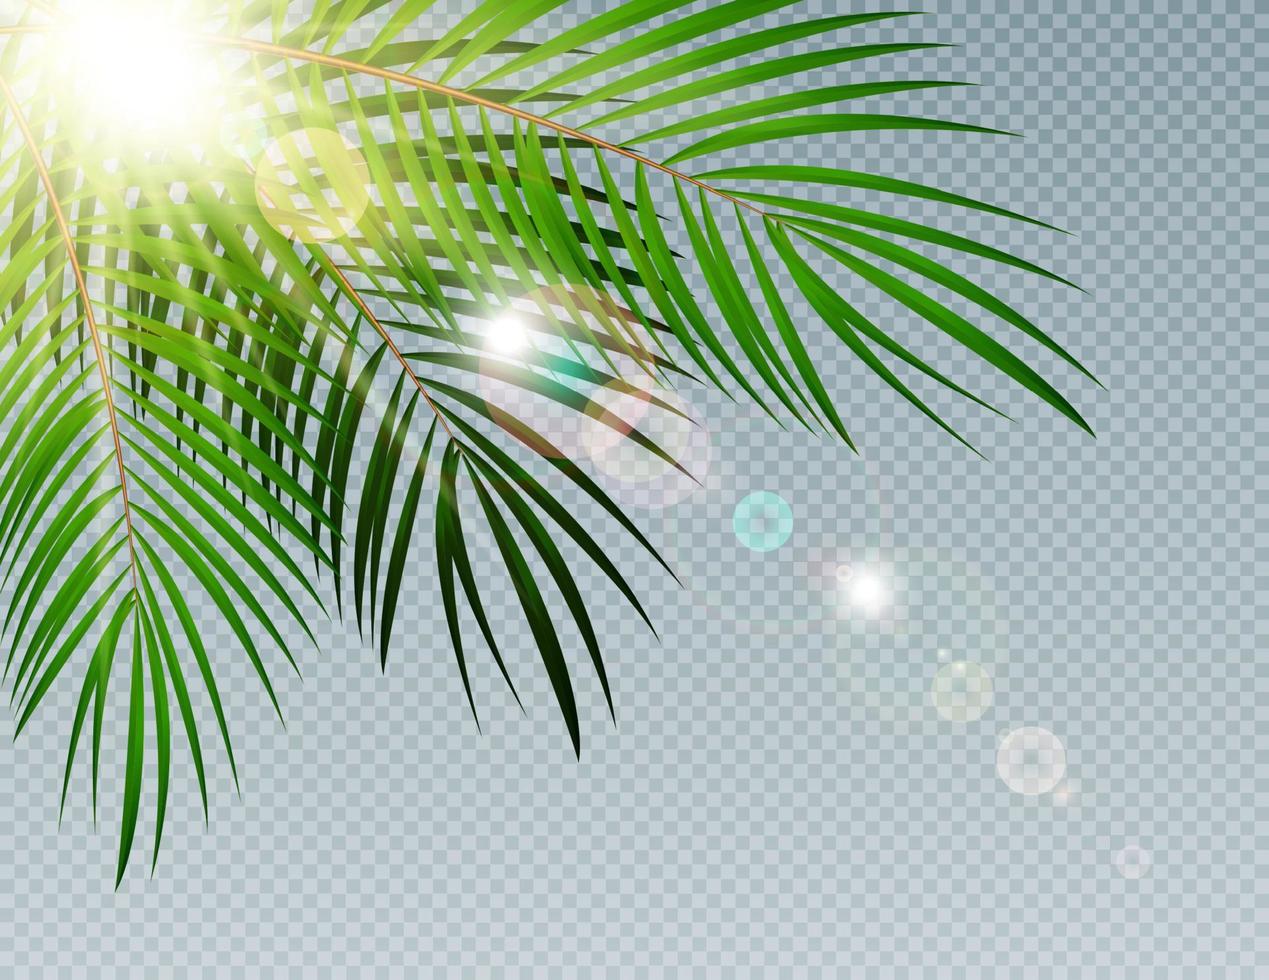 zomertijdpalmblad met zon burnst op transparante vectorillustratie als achtergrond vector